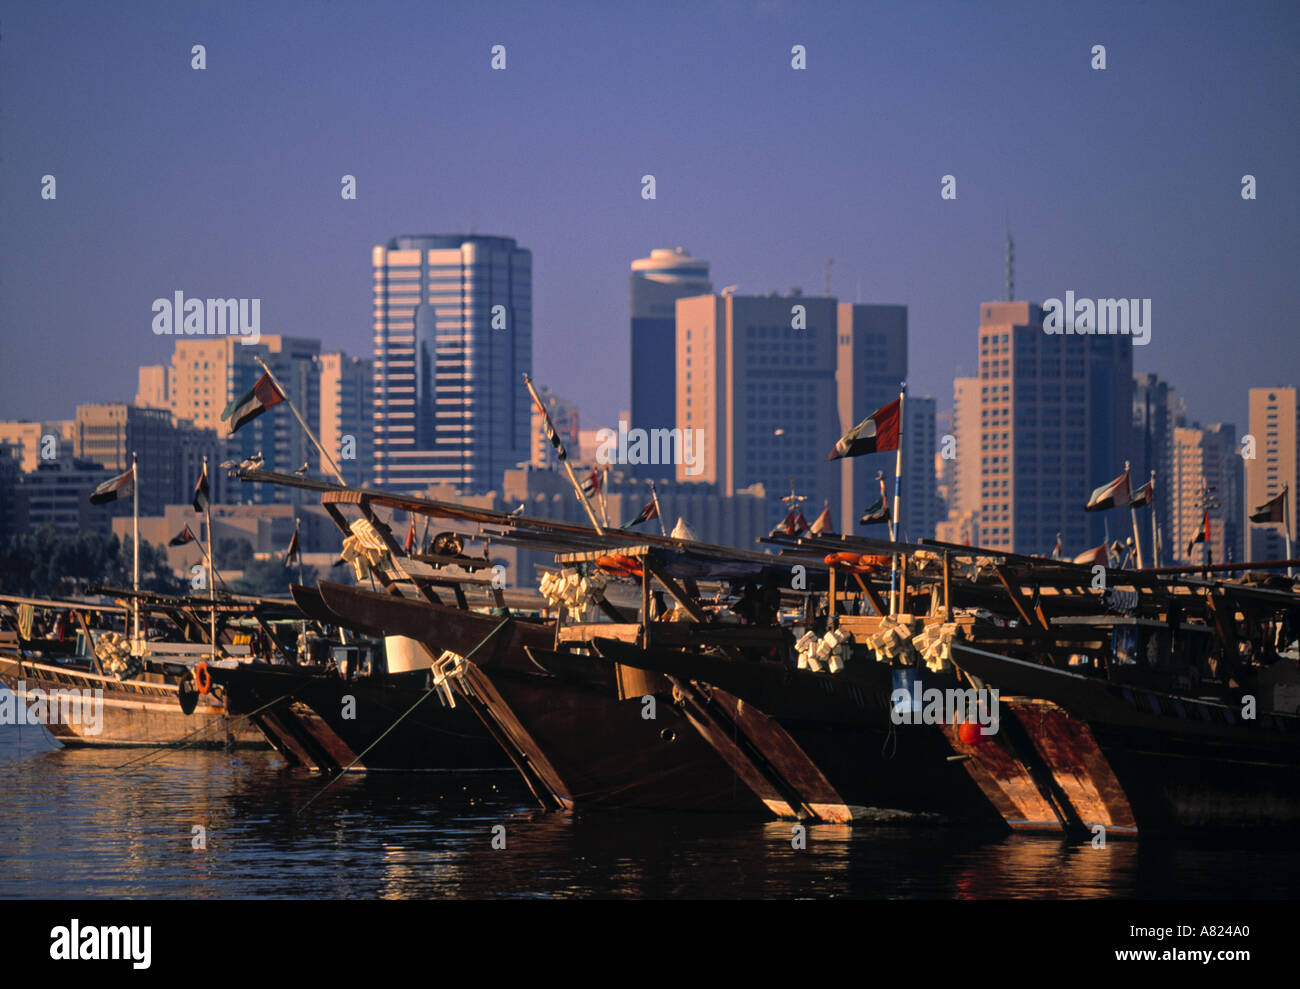 Dhau-Hafen, Abu Dhabi, Vereinigte Arabische Emirate Stockfoto